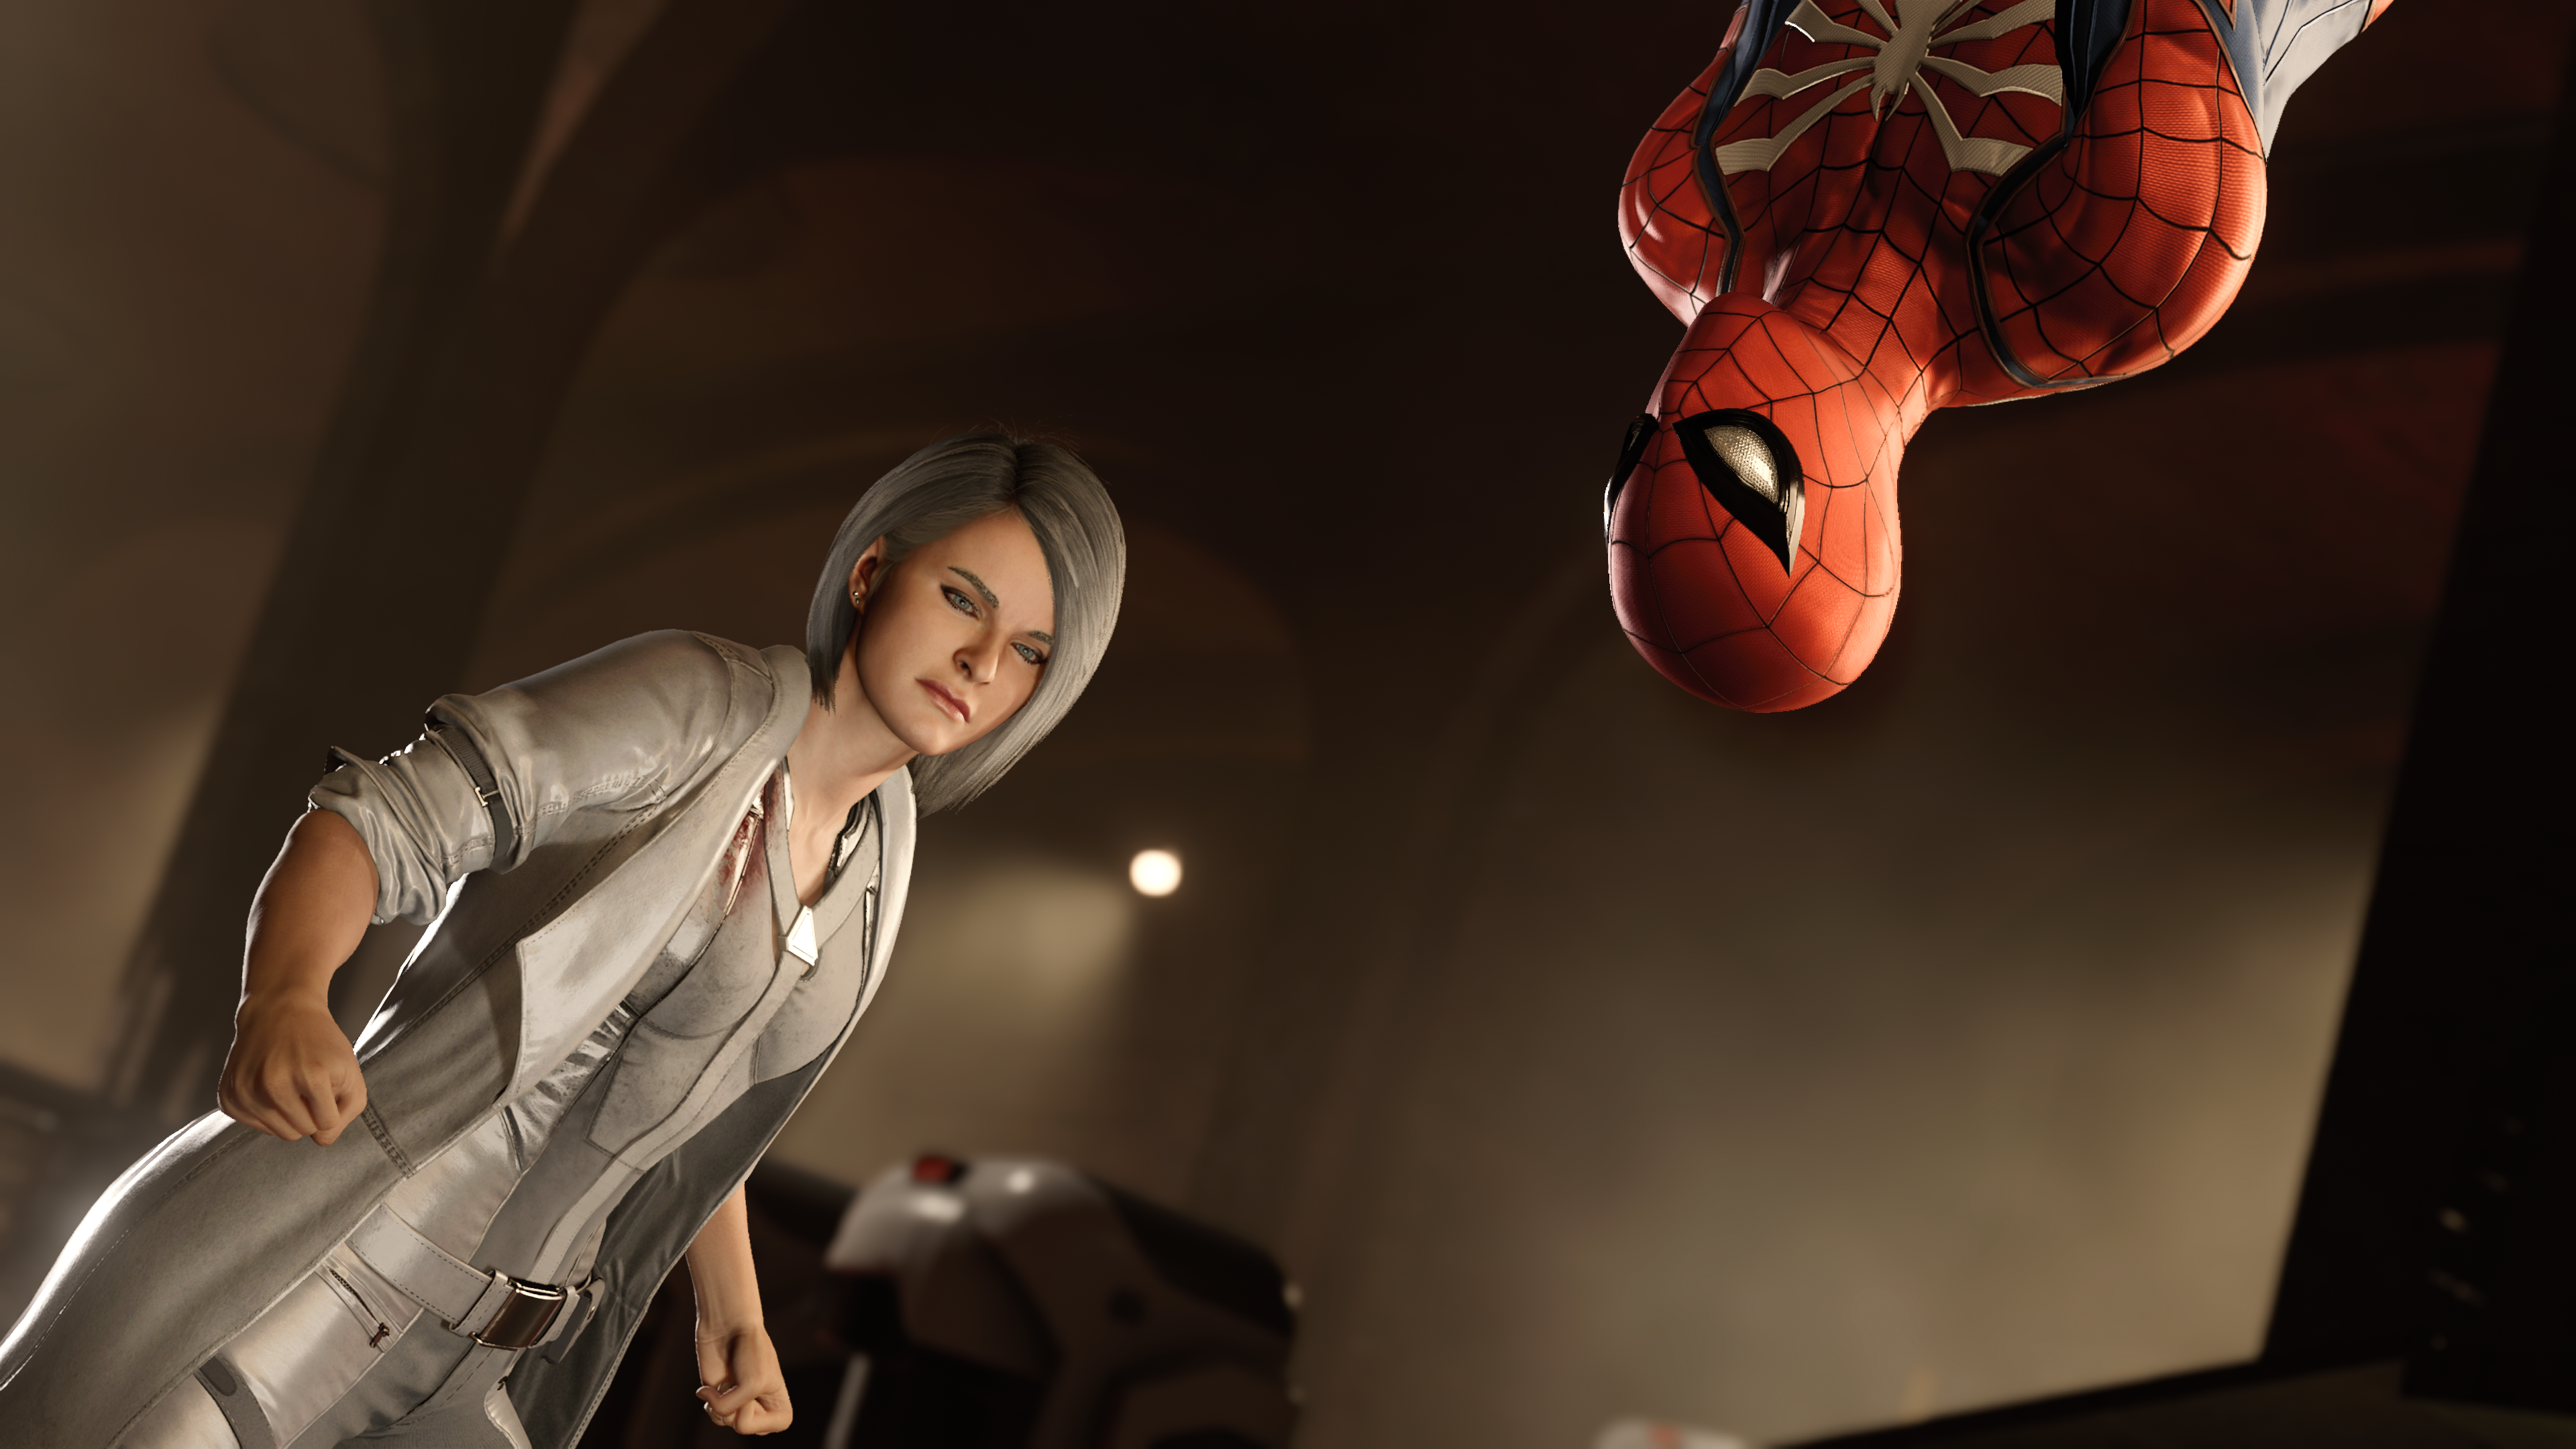 Spider-Man: A Cidade que Nunca Dorme Análise - Gamereactor